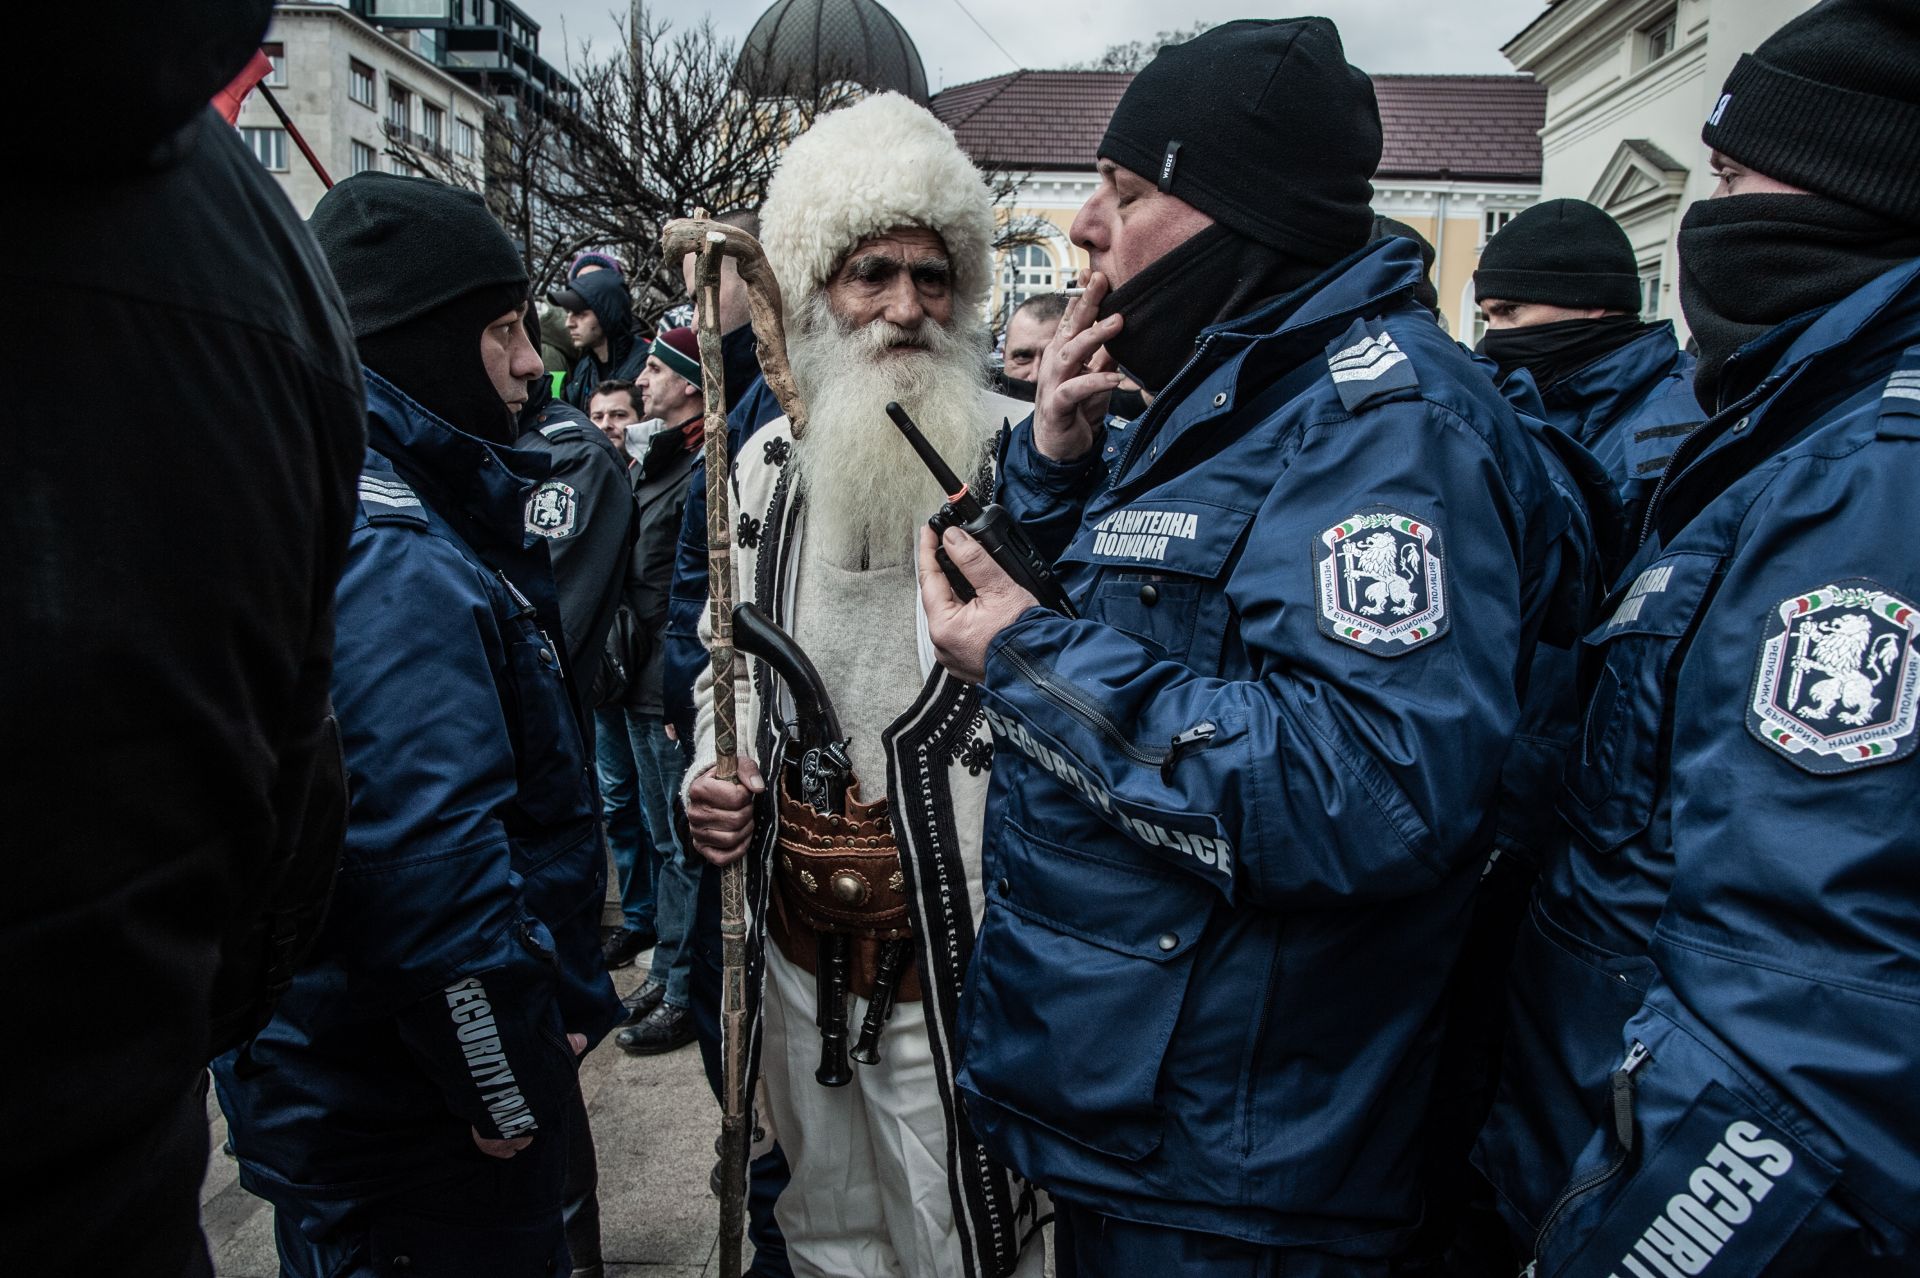 Кадър на Христо Русев достигна до международните агенции. Той е от София, по време на протестите пред Народното събрание. На кадъра се вижда възрастен мъж, облечен с традиционна носия, който разговаря с полицаите. 